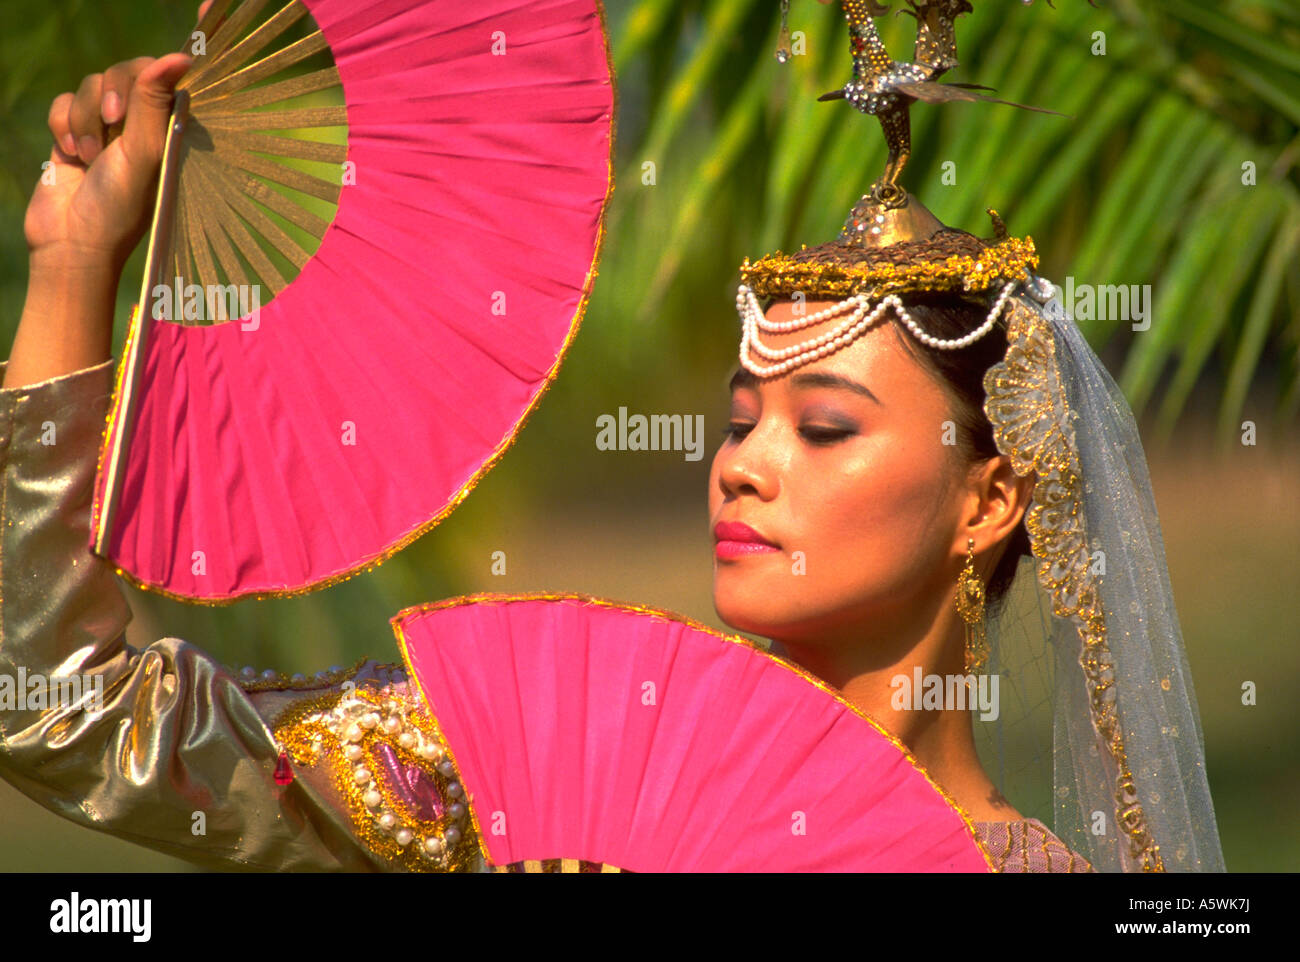 Painet hk2653 princesa filipinas mujer mujeres fans filipinos musulmanes  bailarina de danza fan exótica belleza tropical exuberante riqueza  Fotografía de stock - Alamy